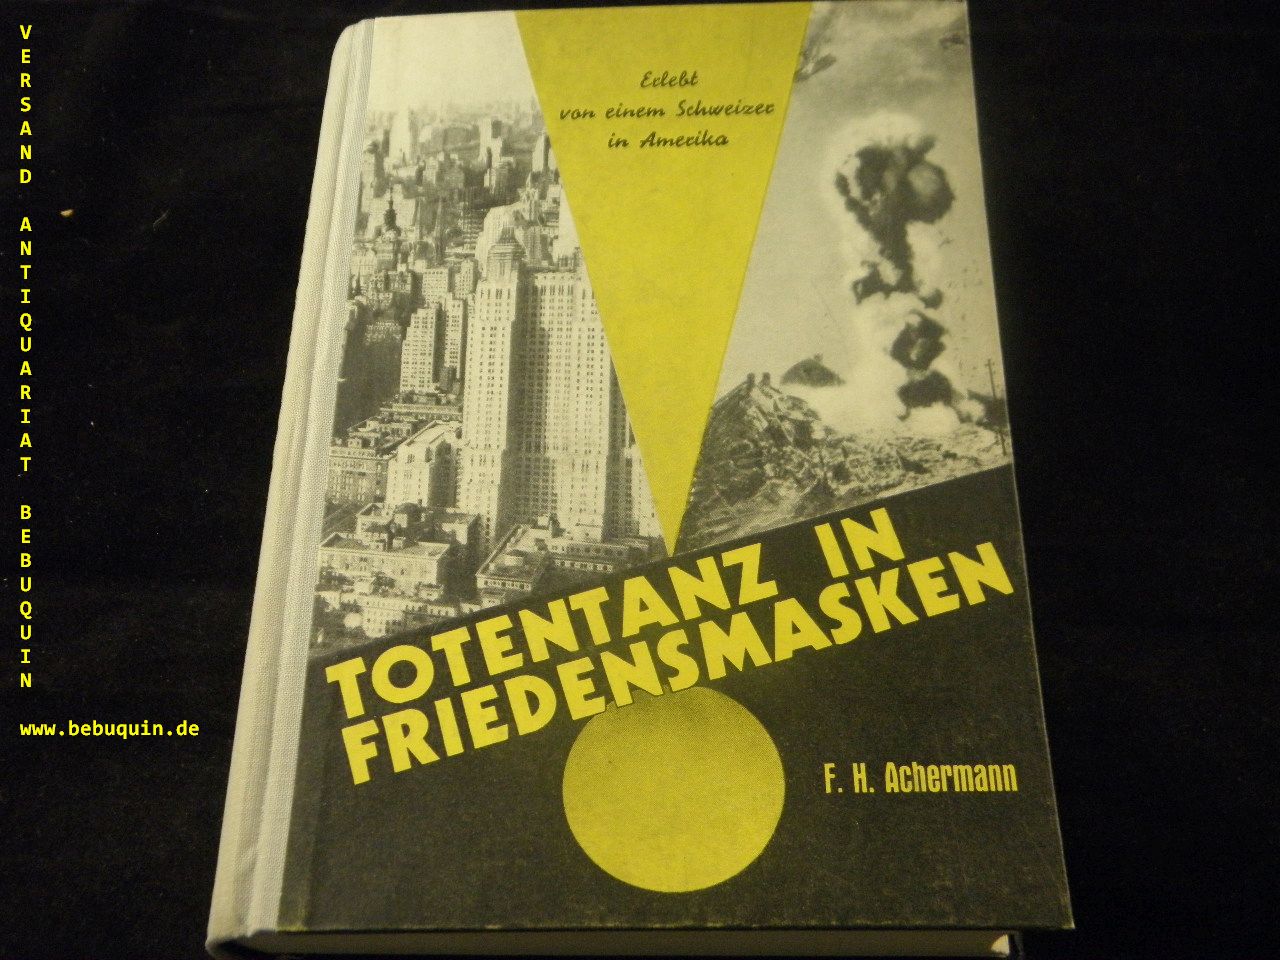 ACHERMANN, Franz Heinrich: - Totentanz in Friedensmasken. Erlebt von einem Schweizer in Amerika.